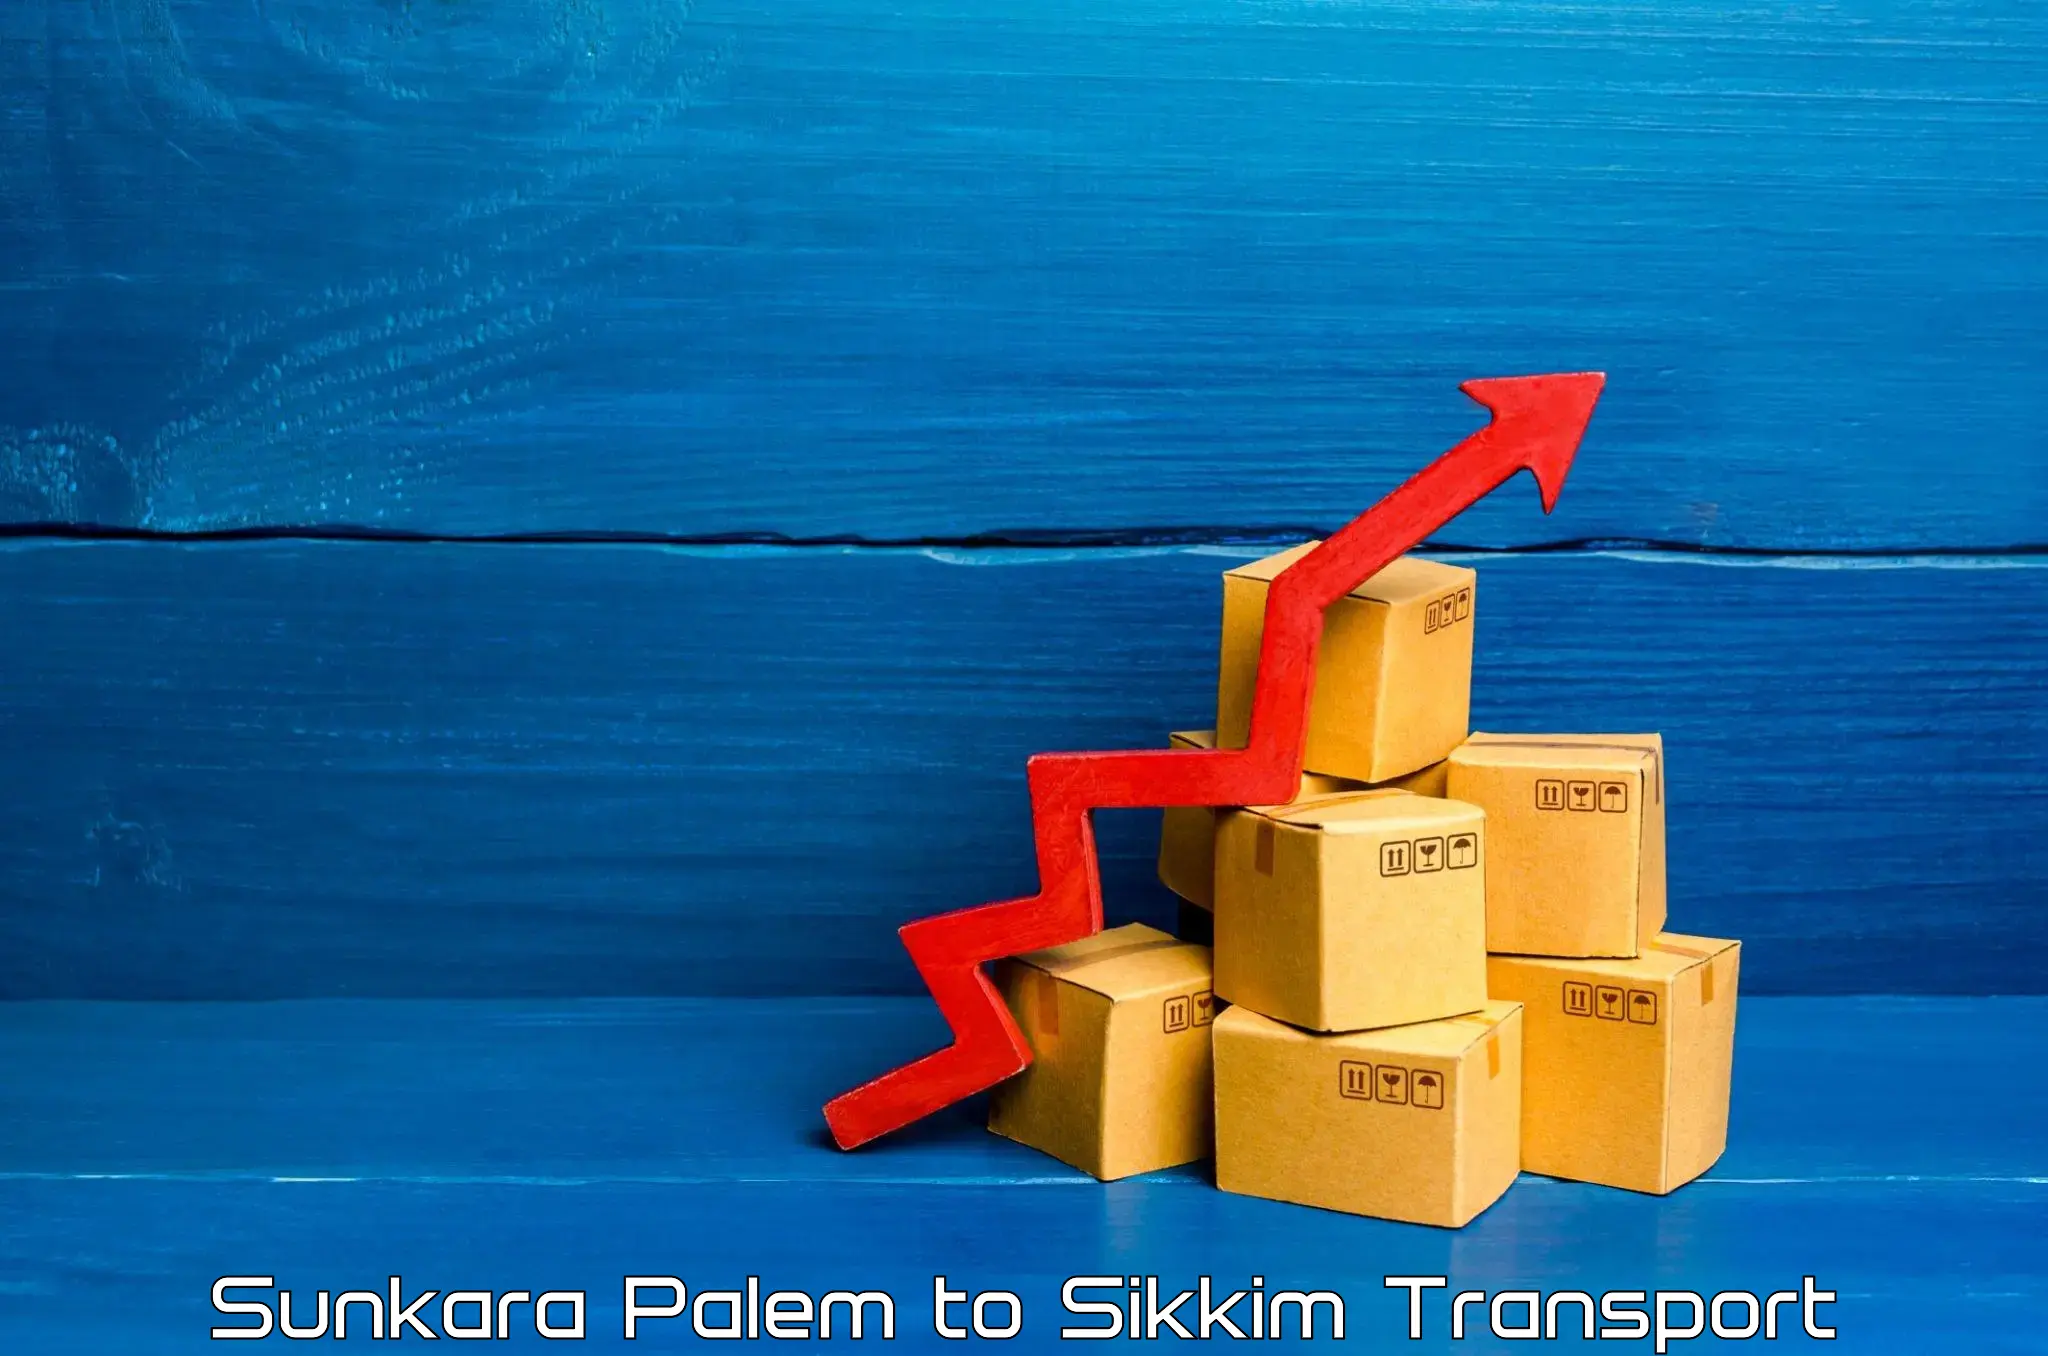 Daily parcel service transport Sunkara Palem to South Sikkim